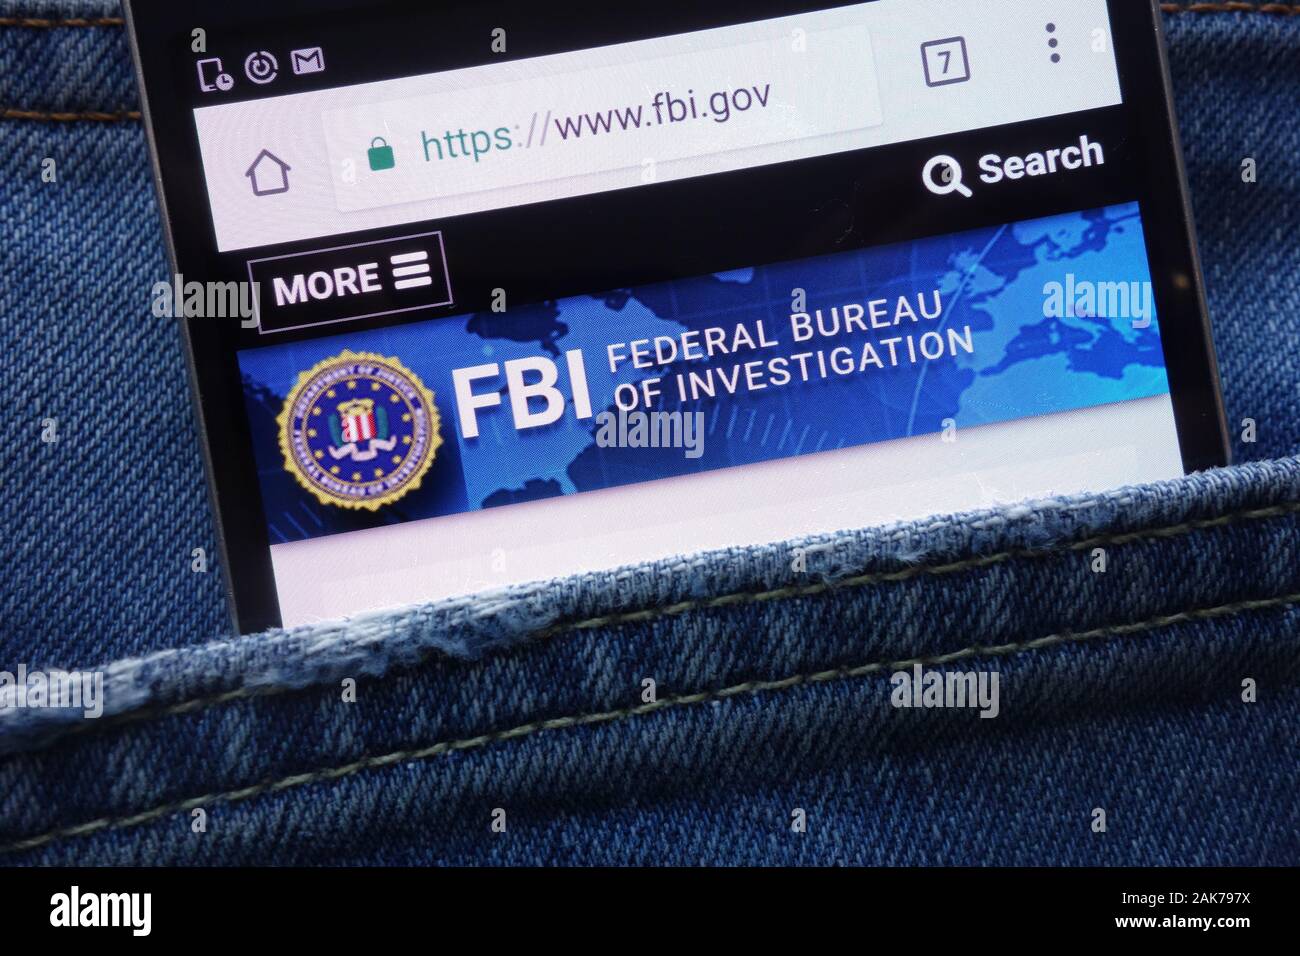 FBI (Federal Bureau of Investigation) website displayed on smartphone hidden in jeans pocket Stock Photo